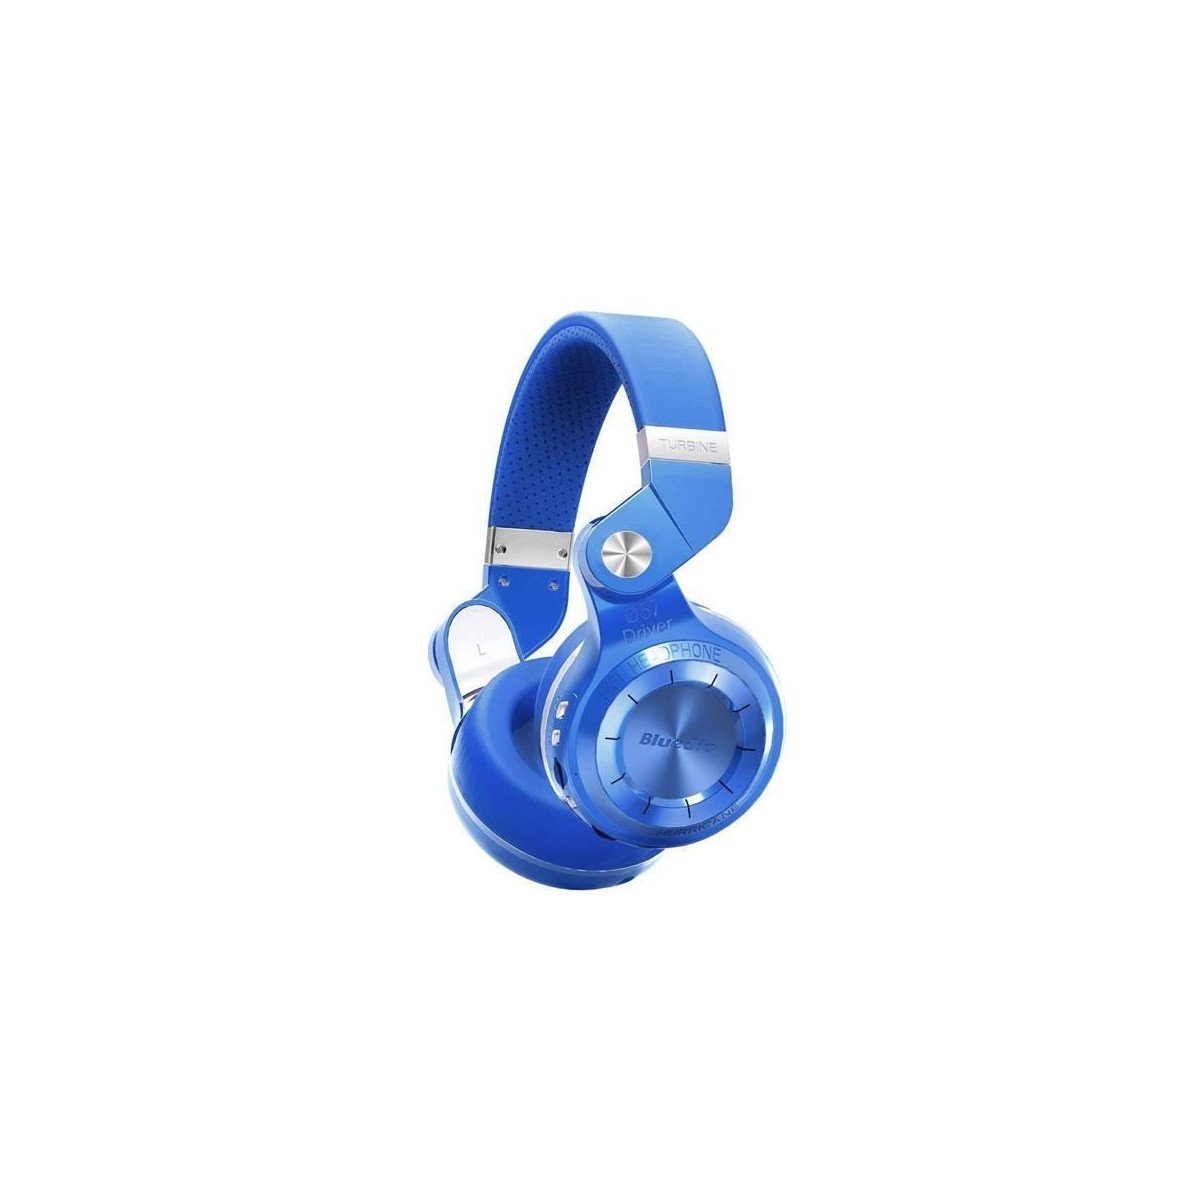 Casque Bluetooth Bluedio T2+ stéréo sans fil avec microphone carte micro-SD et FM radio Bleu